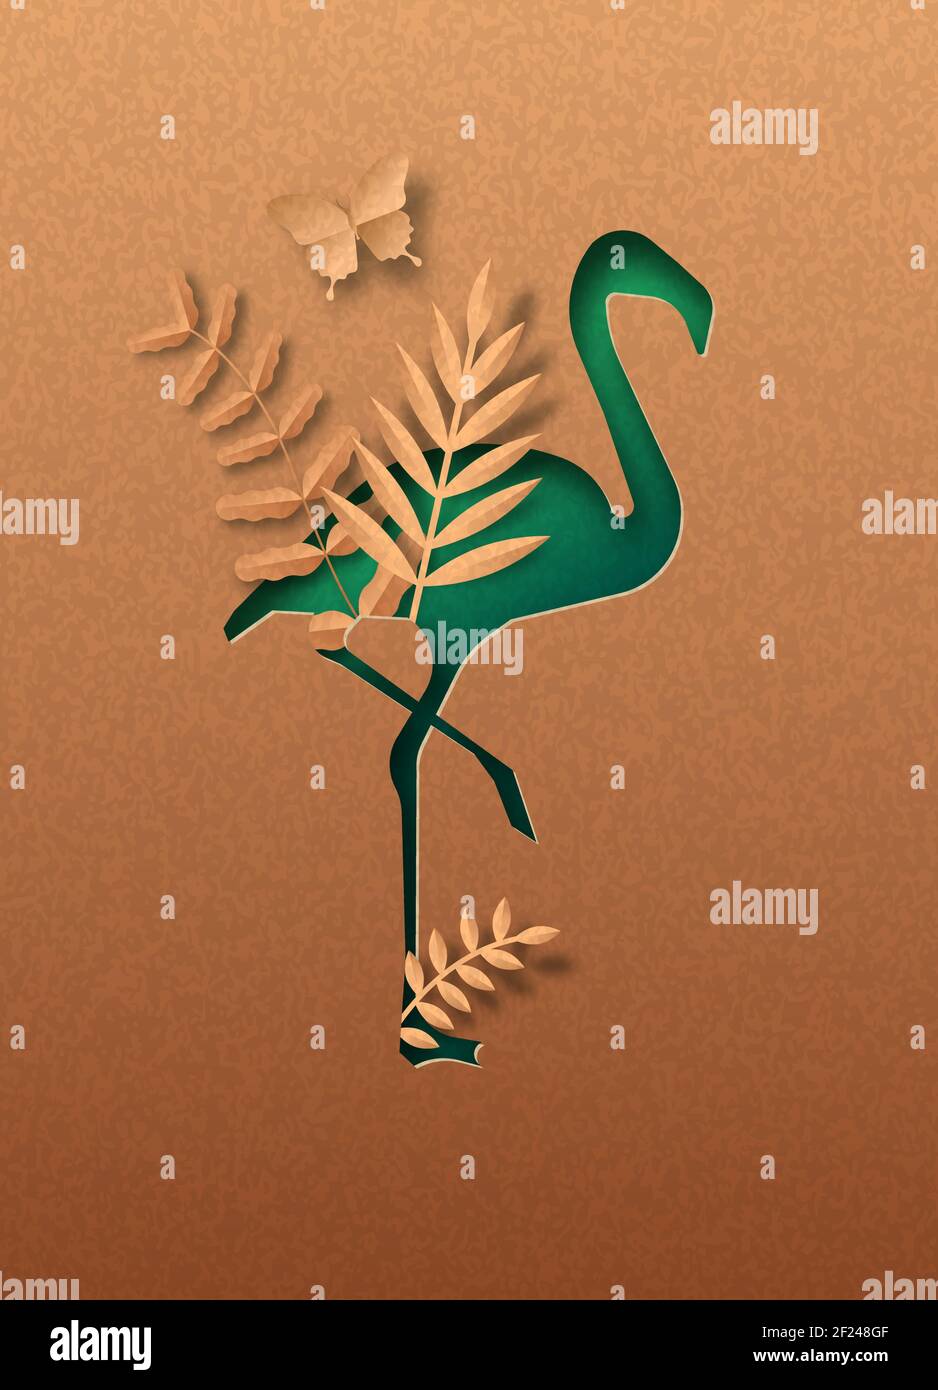 Uccello fenicottero verde isolato silhouette in papercut con foglia di pianta tropicale all'interno. Carta riciclata texture taglio concetto per africa safari, fauna selvatica co Illustrazione Vettoriale